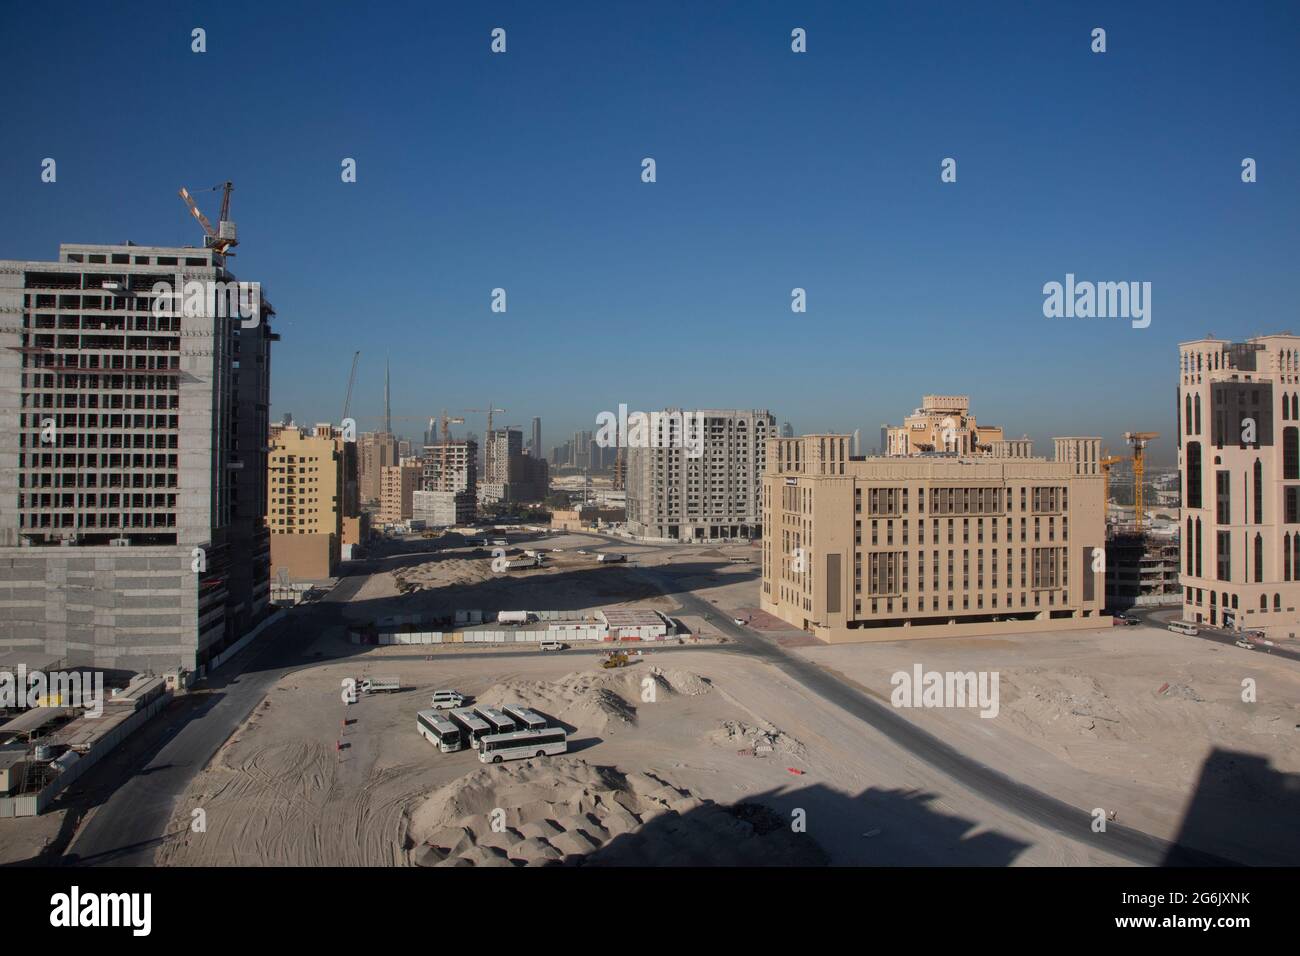 In attesa dell'EXPO 2020, in tutta Dubai verranno costruiti hotel nuovi di zecca. Foto Stock